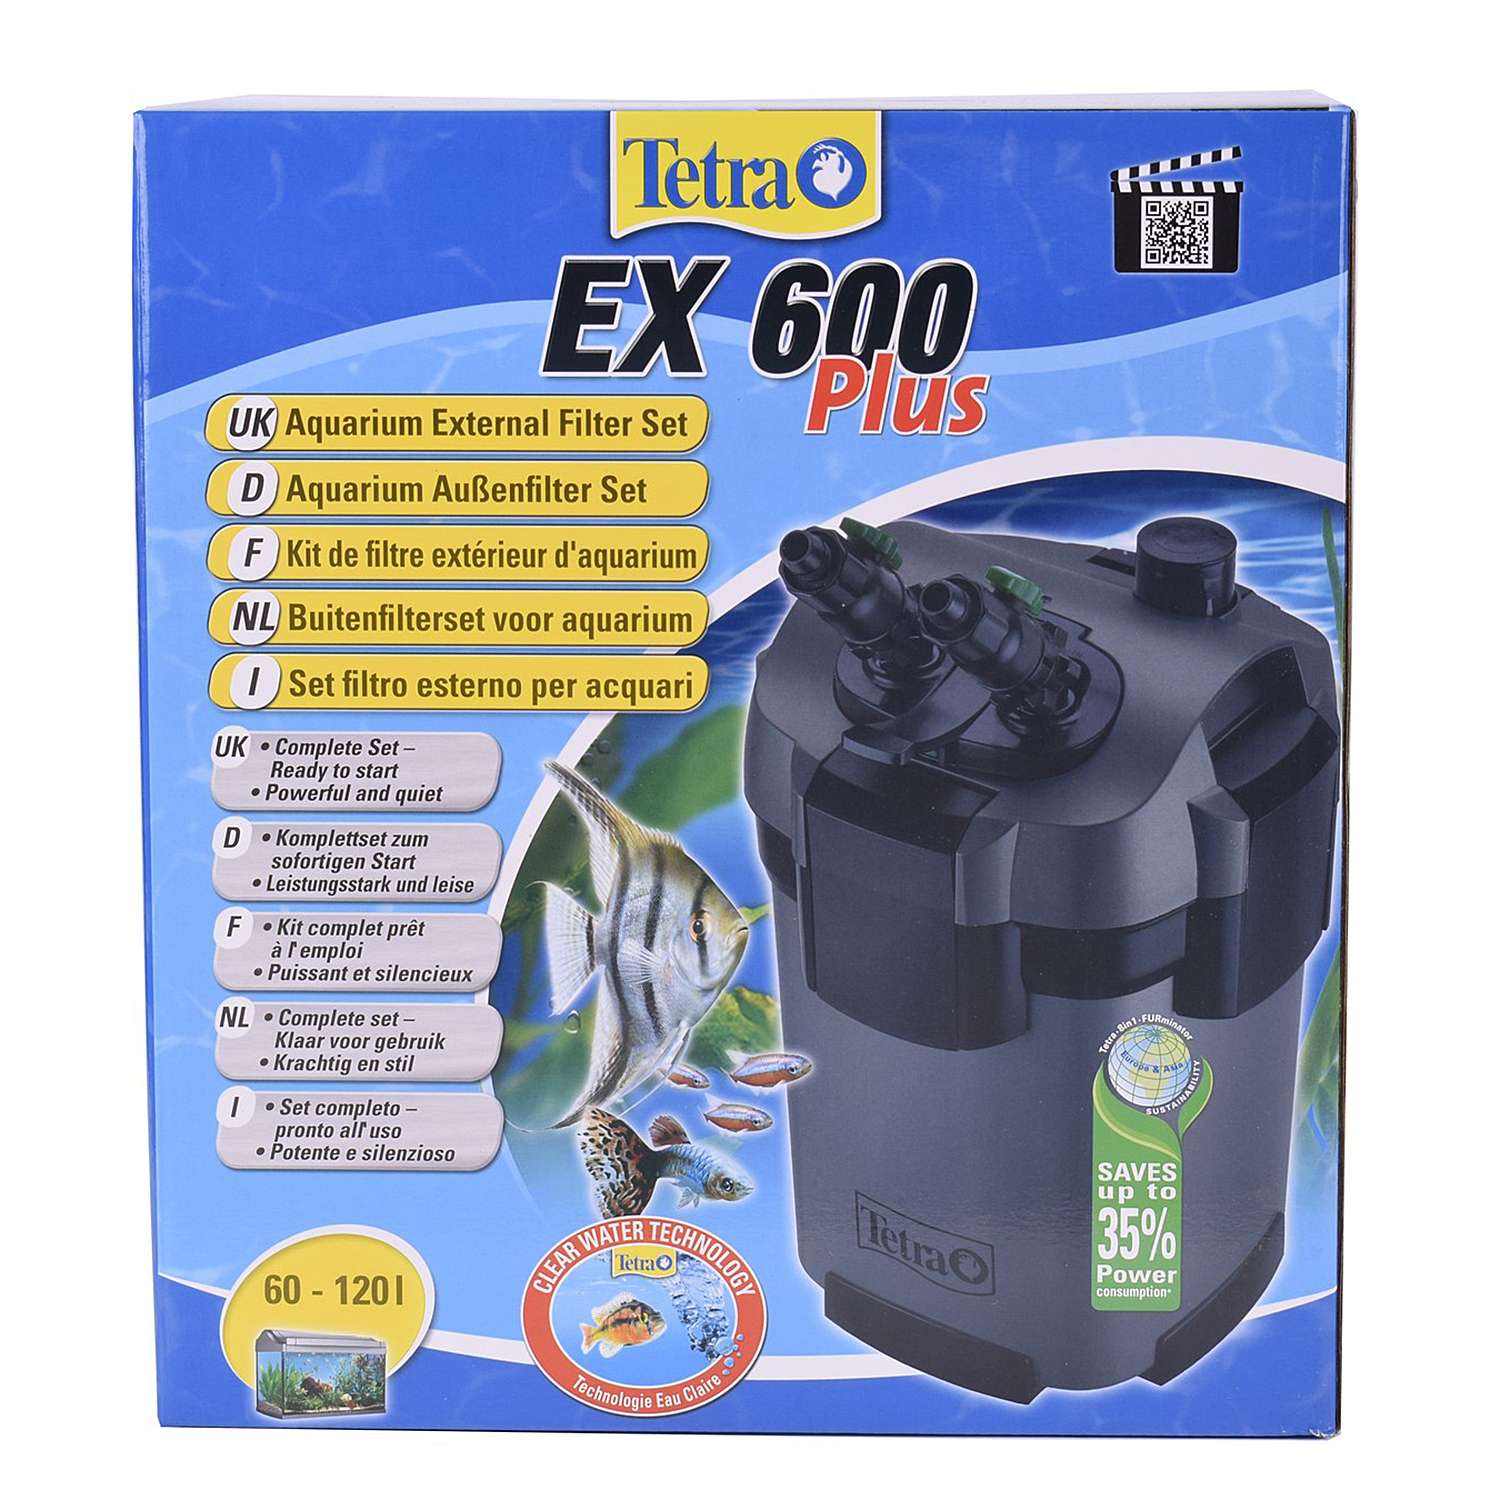 Фильтр для аквариумов Tetra EX 600 Plus внешний 60-120л - фото 2